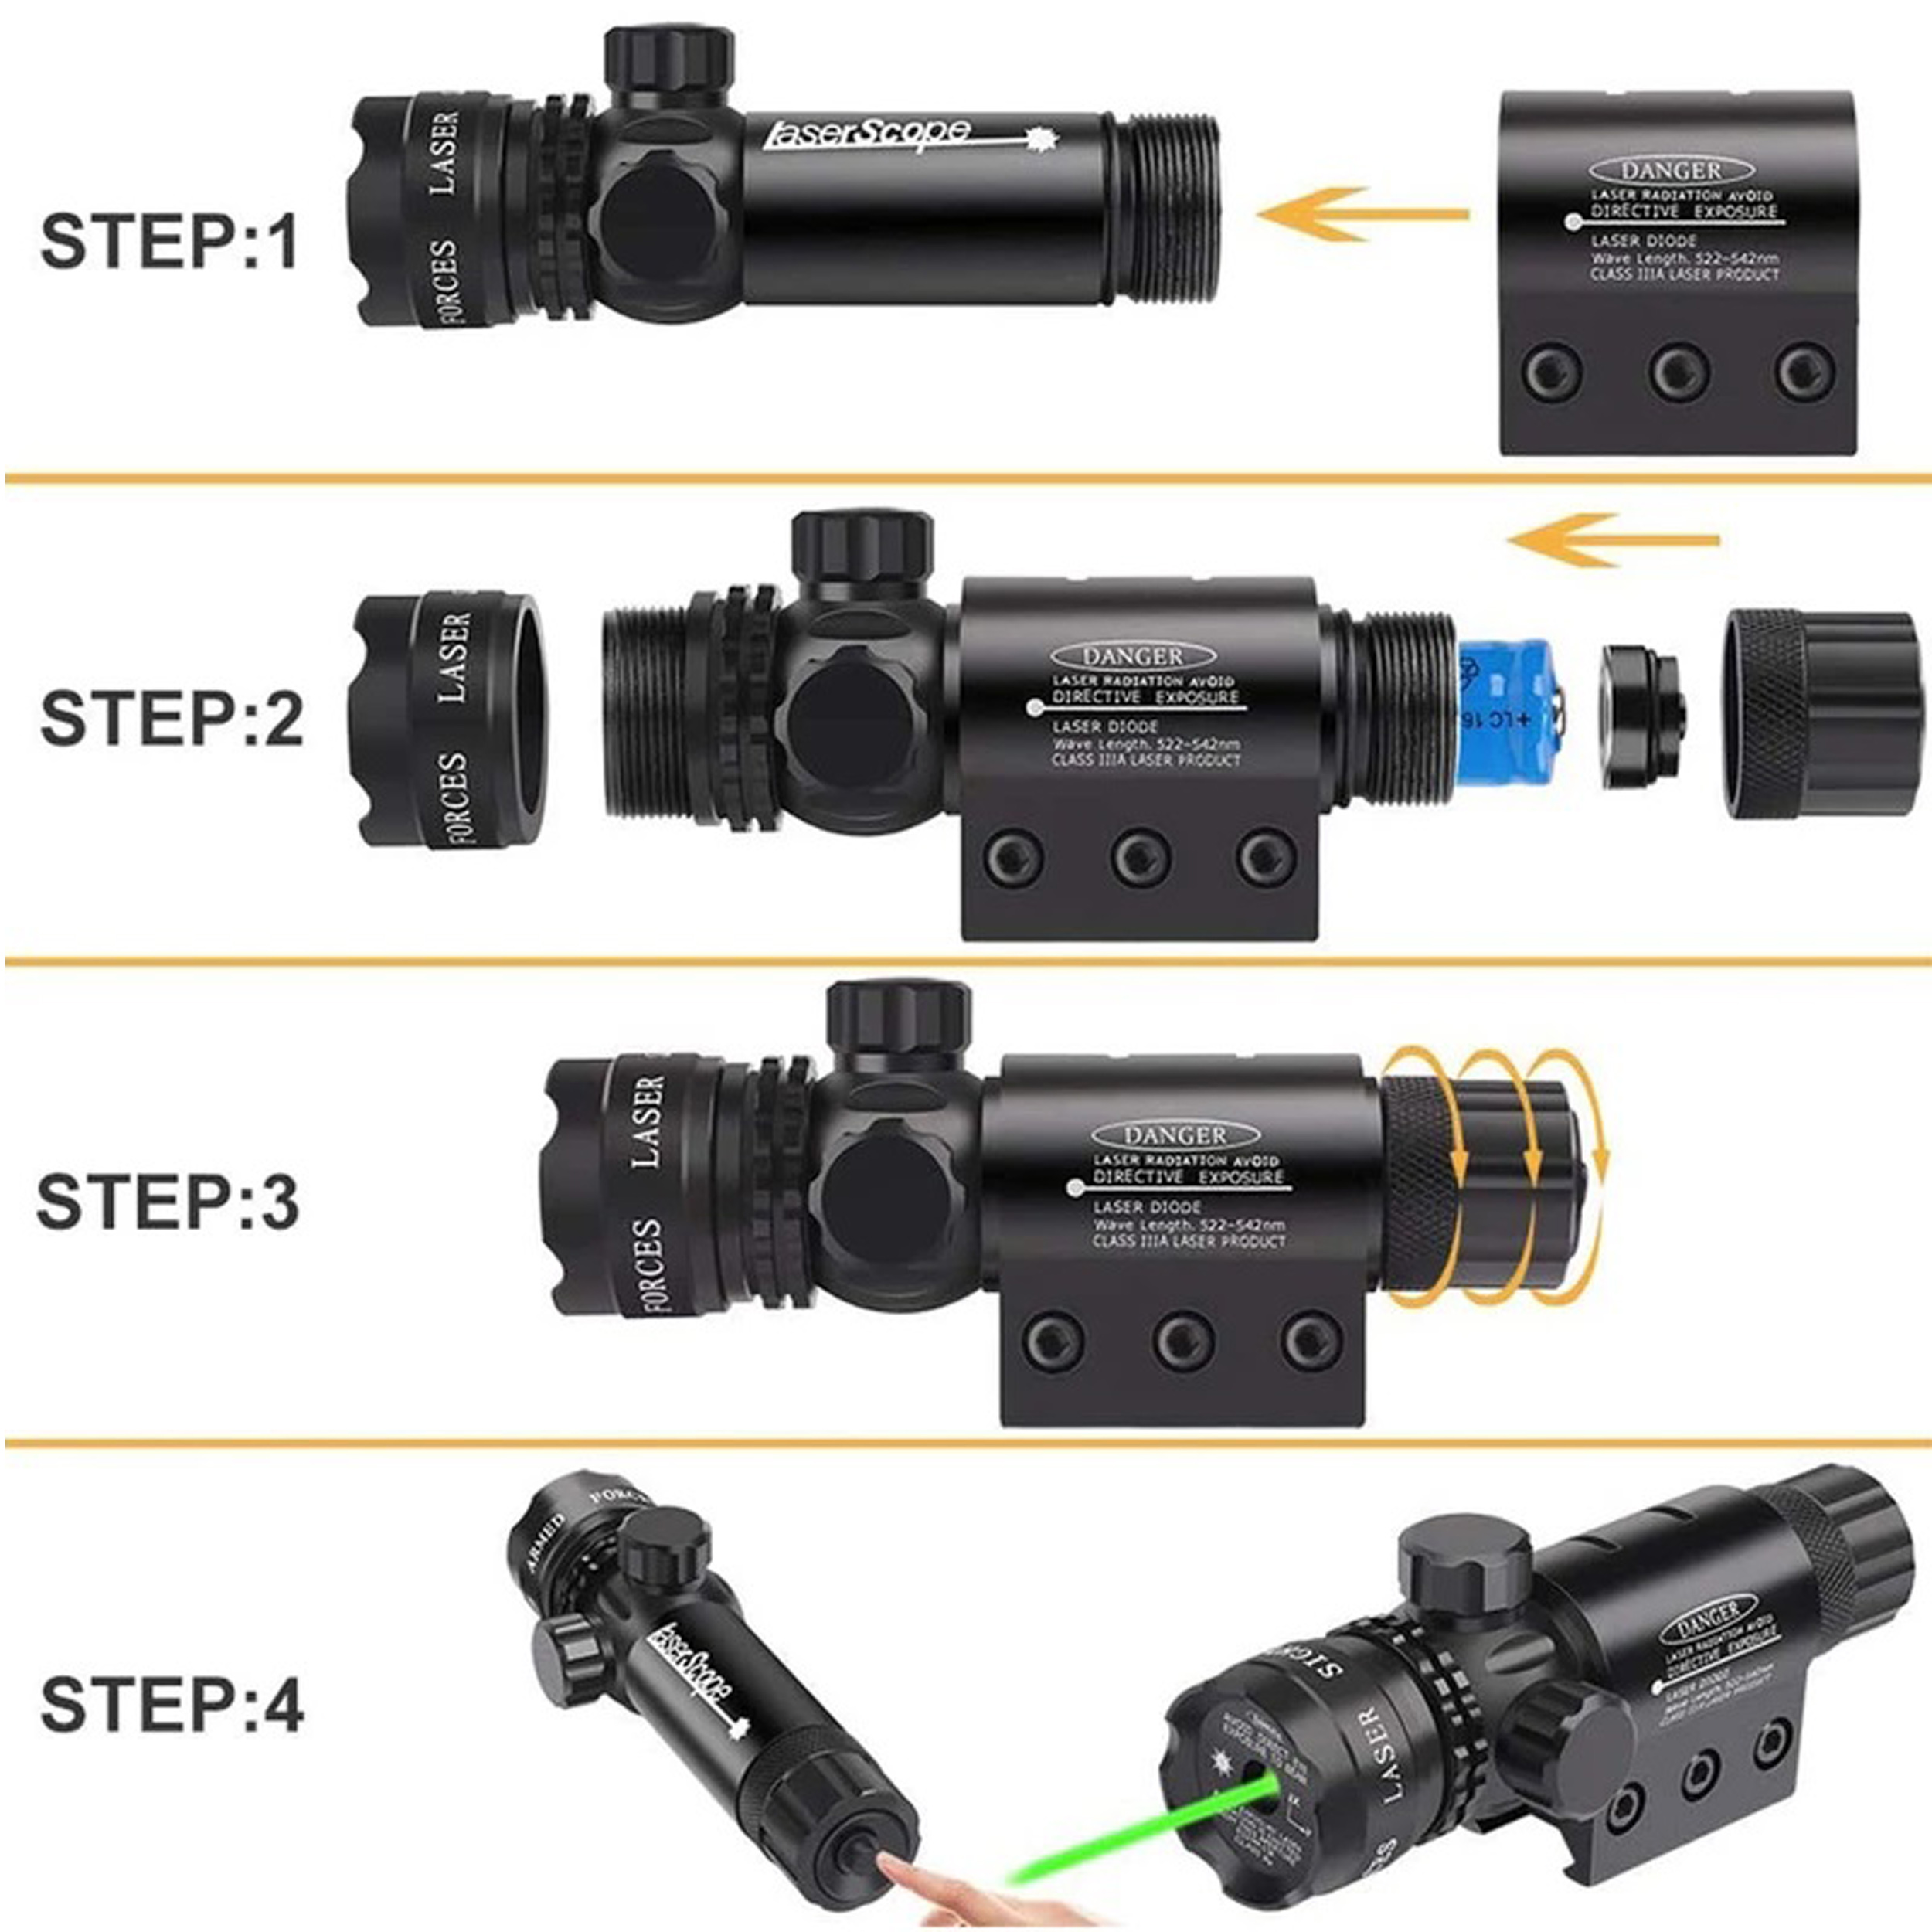 لیزر دوربین تفنگ اسمال سان مدل ZY-803R مجموعه 7 عددی